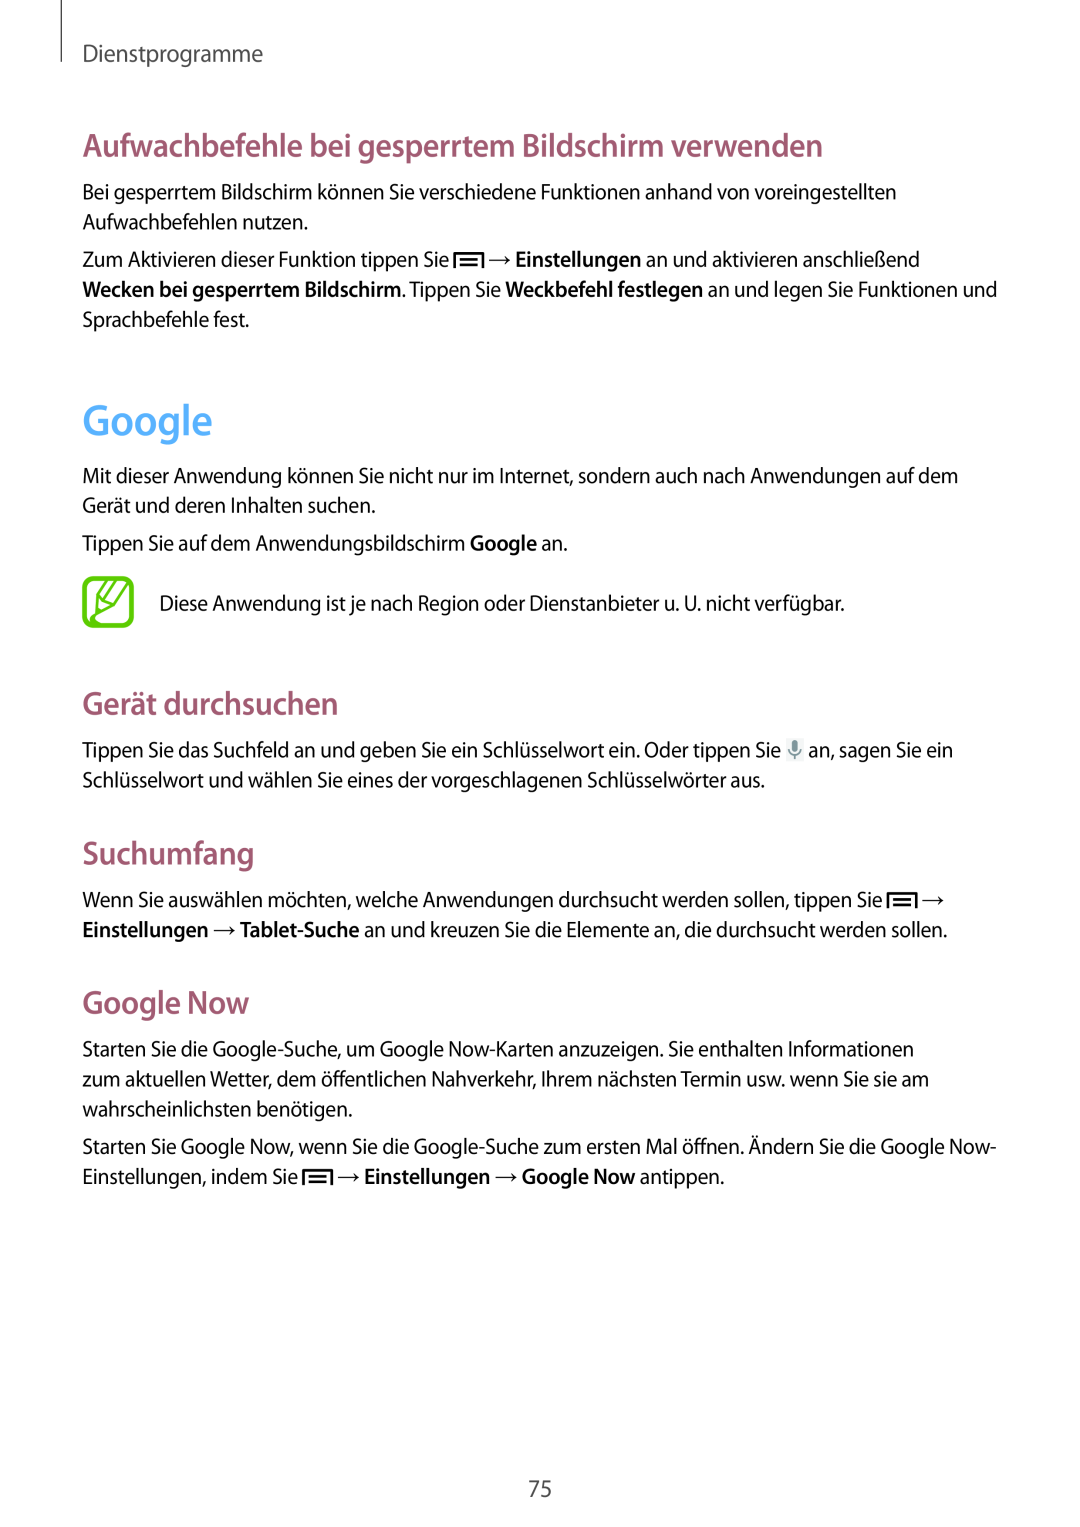 Samsung SM-T110NDWATPH manual Google, Aufwachbefehle bei gesperrtem Bildschirm verwenden, Gerät durchsuchen, Suchumfang 